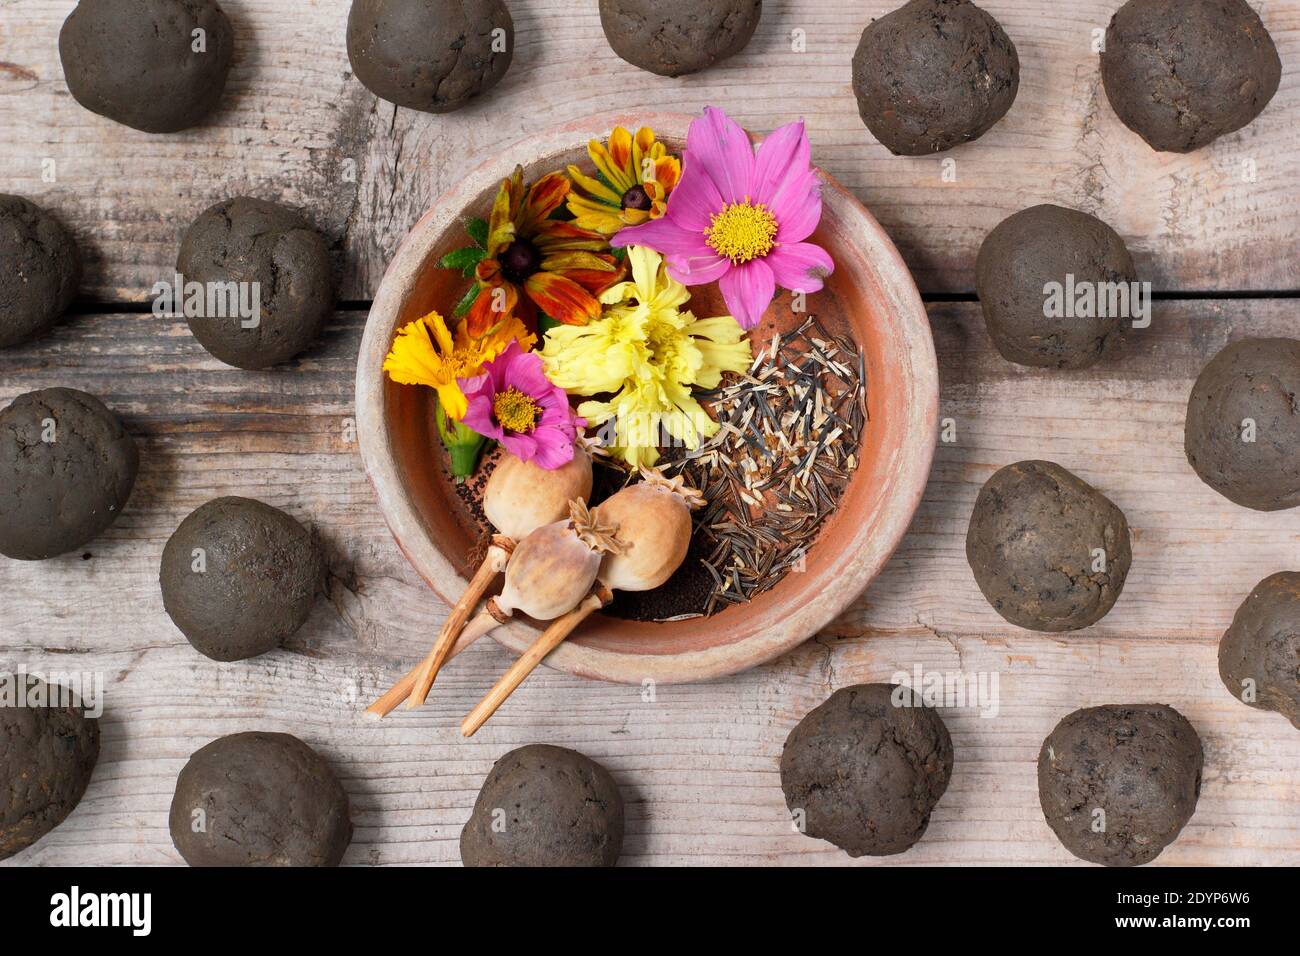 Ingredientes para hacer bombas de semillas de flores - tierra de arcilla hecha en redondos, varias semillas y pétalos opcionales para la decoración. REINO UNIDO Foto de stock